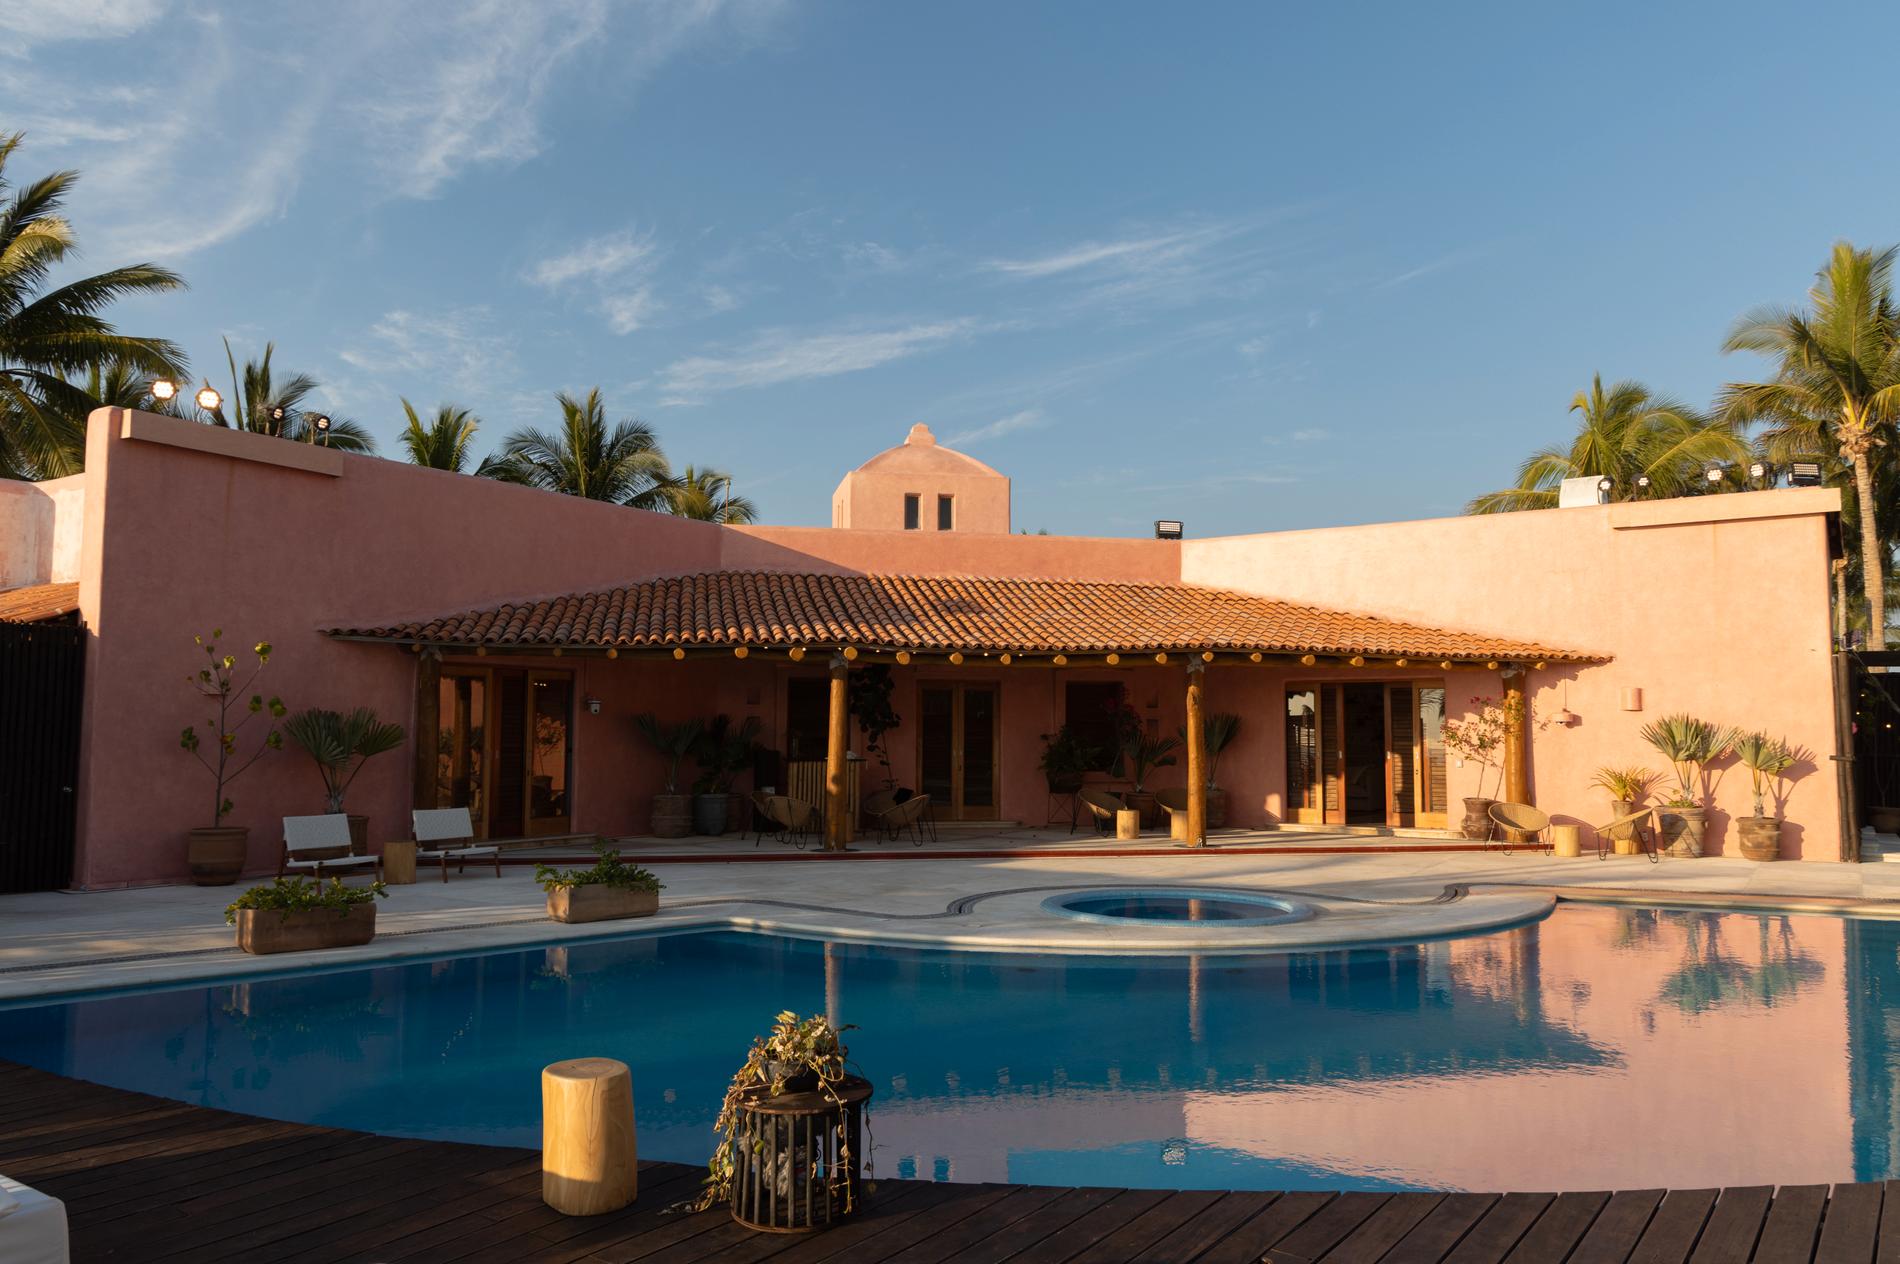 Nya säsongen av ”Paradise hotel” spelas in i Playa Nix, Mexiko.